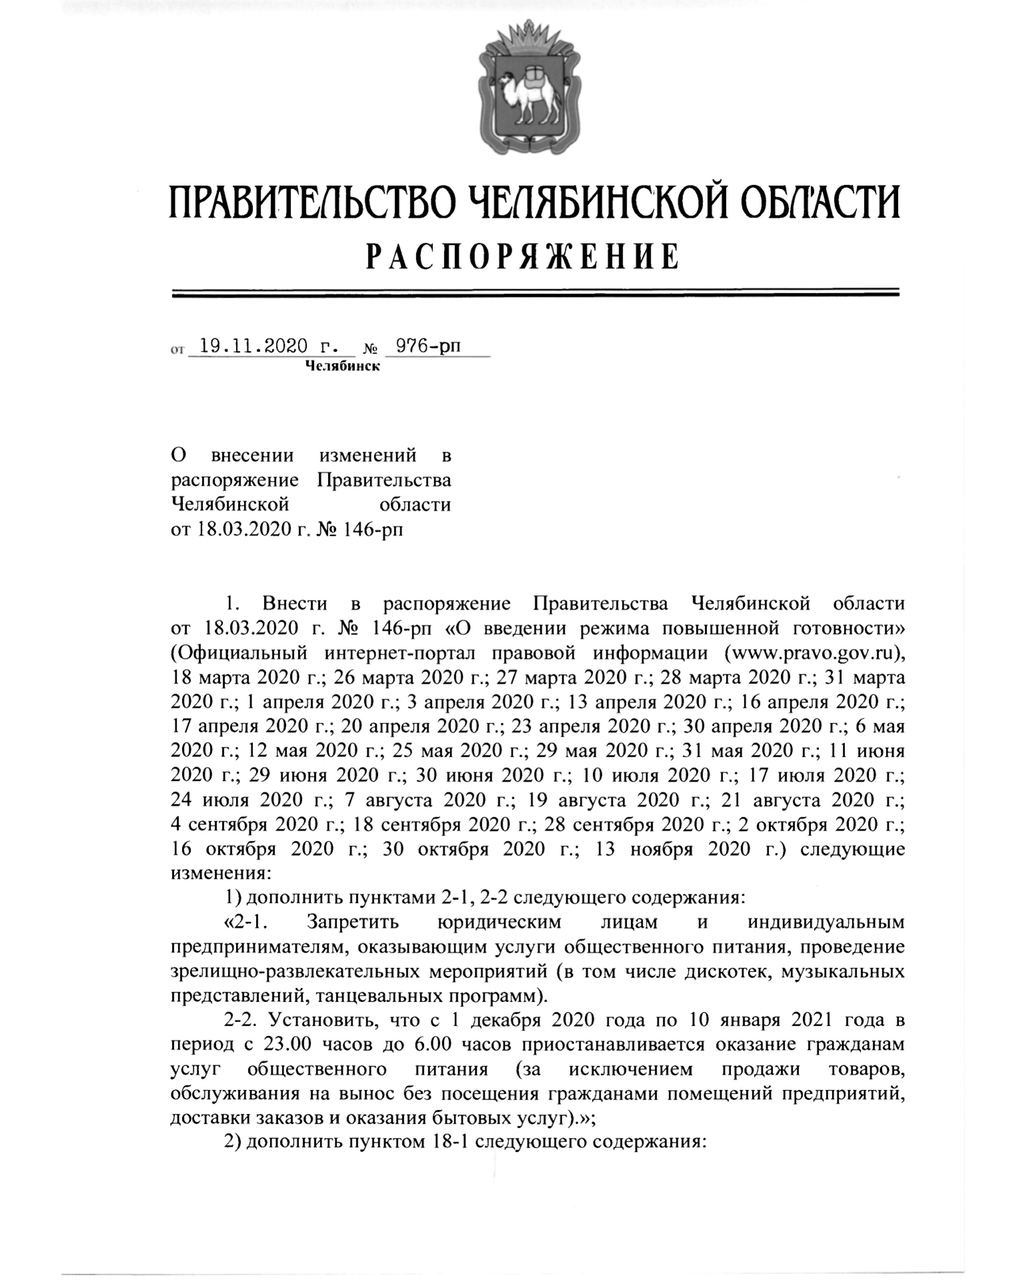 Ковид: в Челябинской области введены новые ограничения